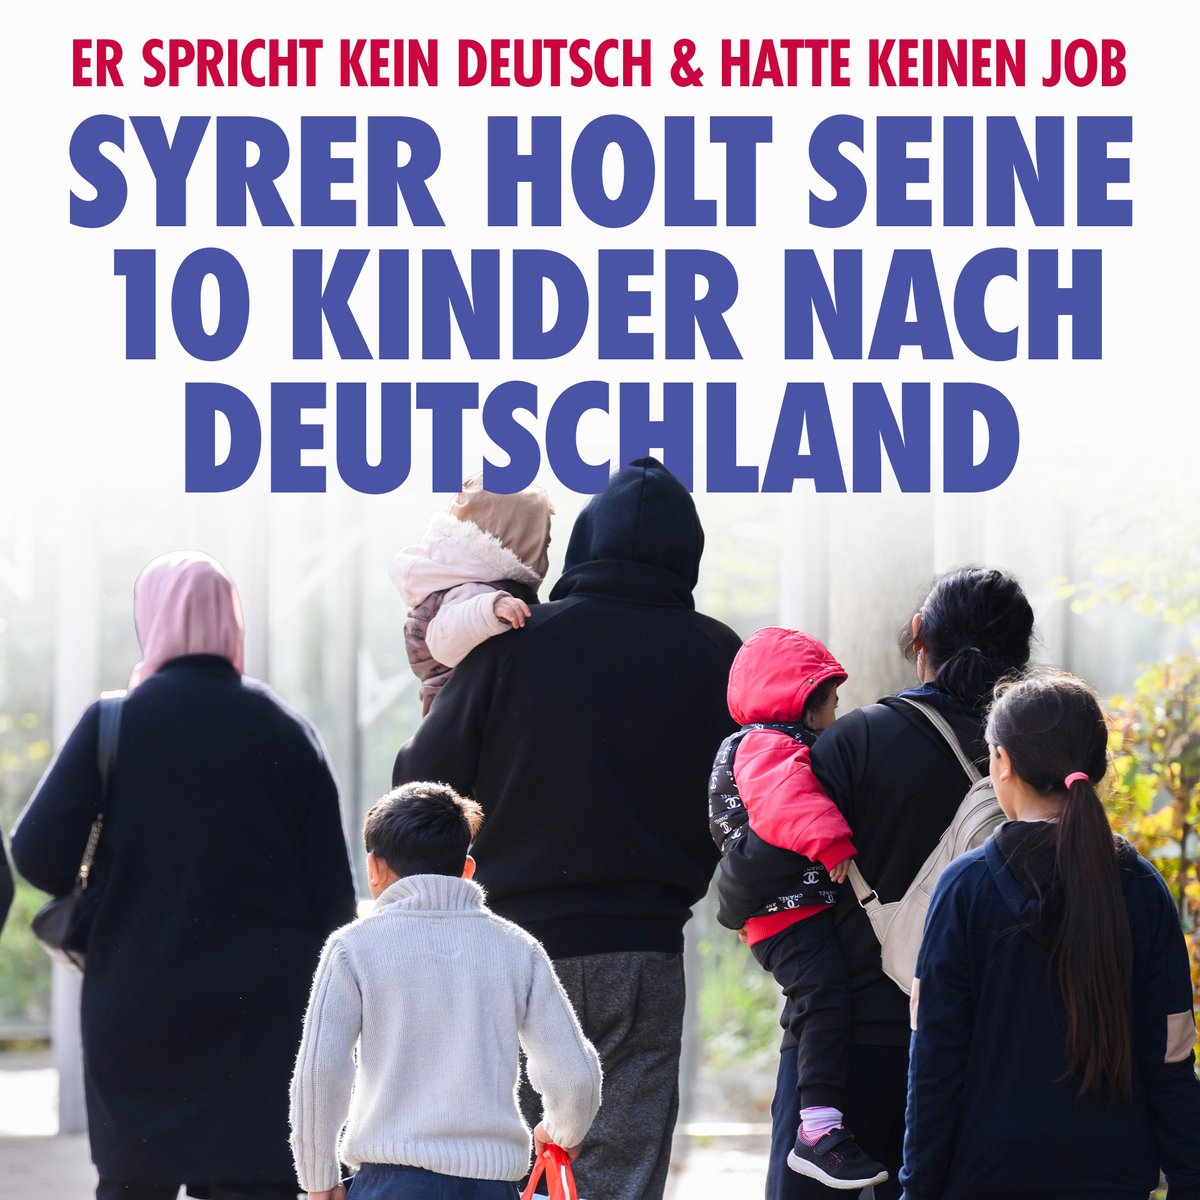 Der Fall eines Syrers in Donauwörth beweist den ganzen Irrsinn unserer Migrationspolitik: Weder sprach der 40-Jährige Deutsch, noch hatte er einen Job – und trotzdem durfte er seine Frau und zehn Kinder per Familiennachzug nach Deutschland holen. nius.de/Gesellschaft/e…